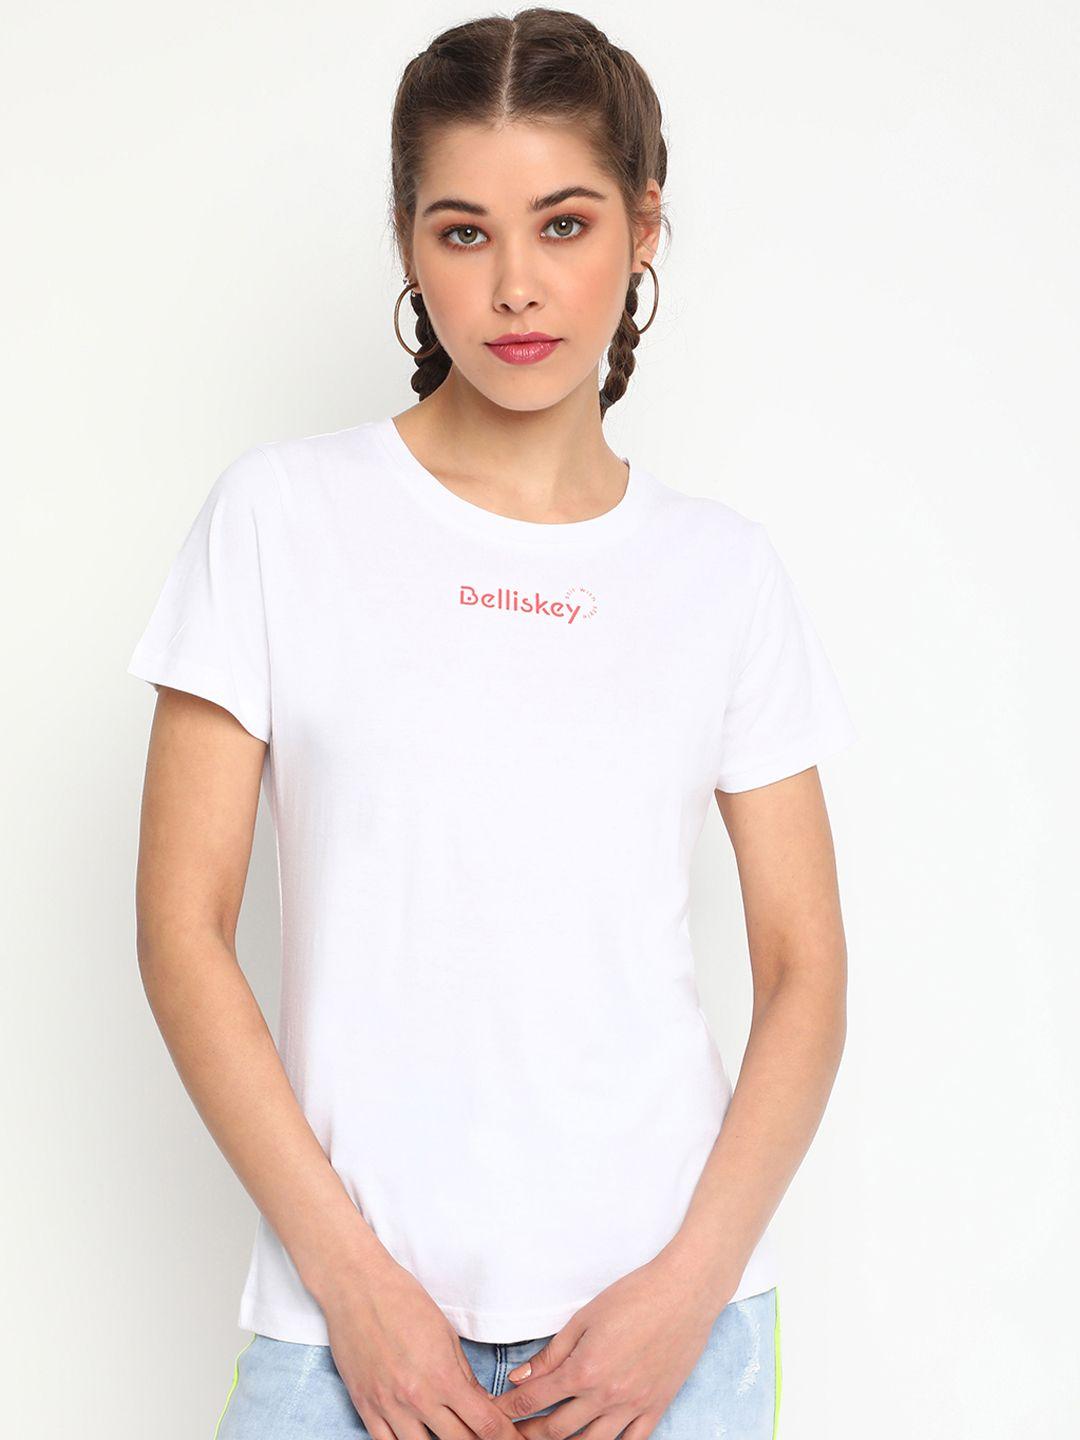 belliskey women white brand logo t-shirt